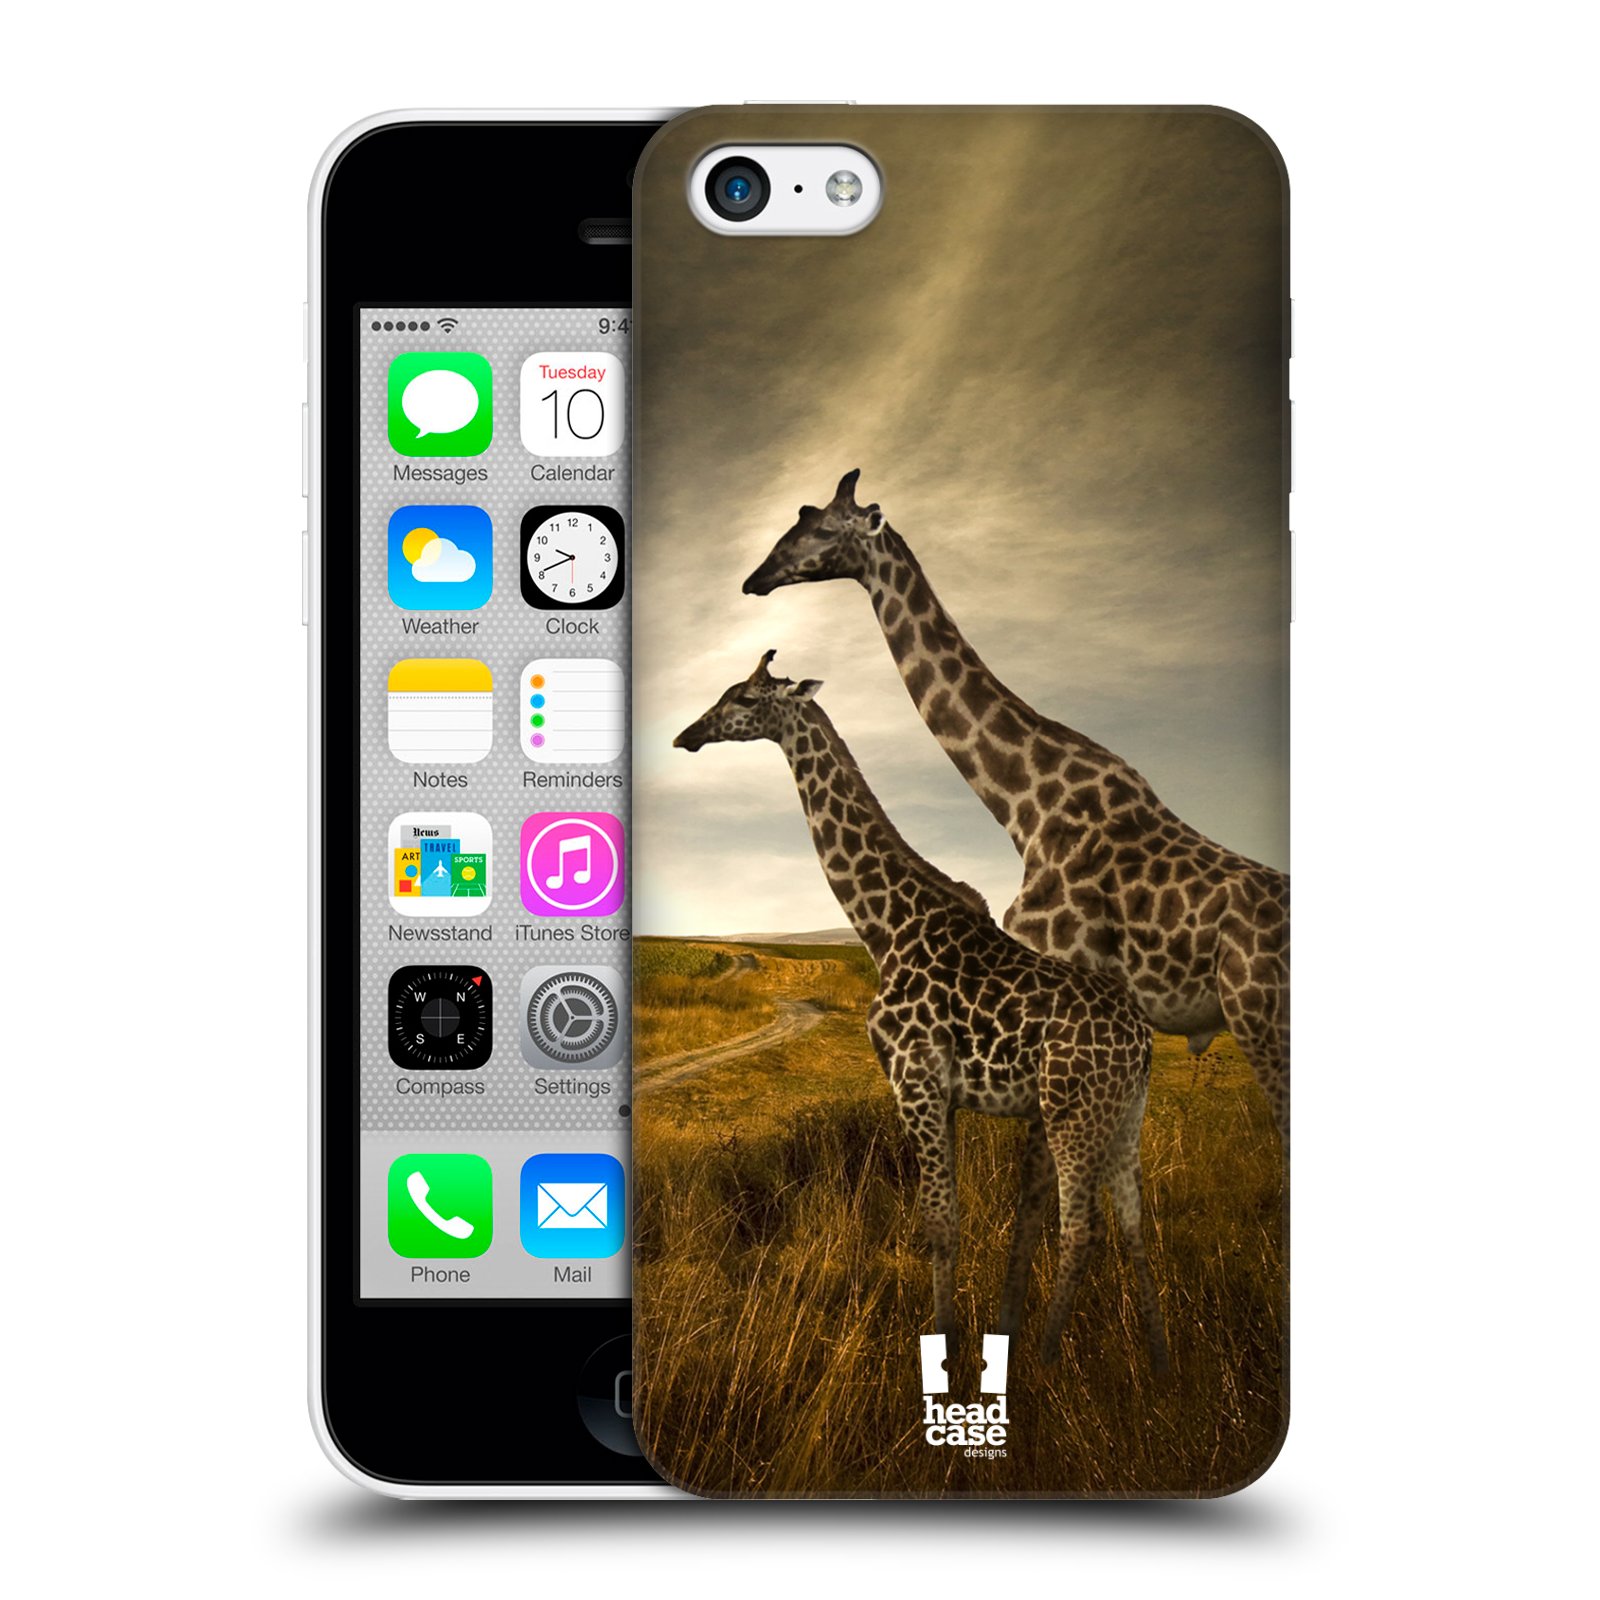 Zadní obal pro mobil Apple Iphone 5C - HEAD CASE - Svět zvířat žirafy